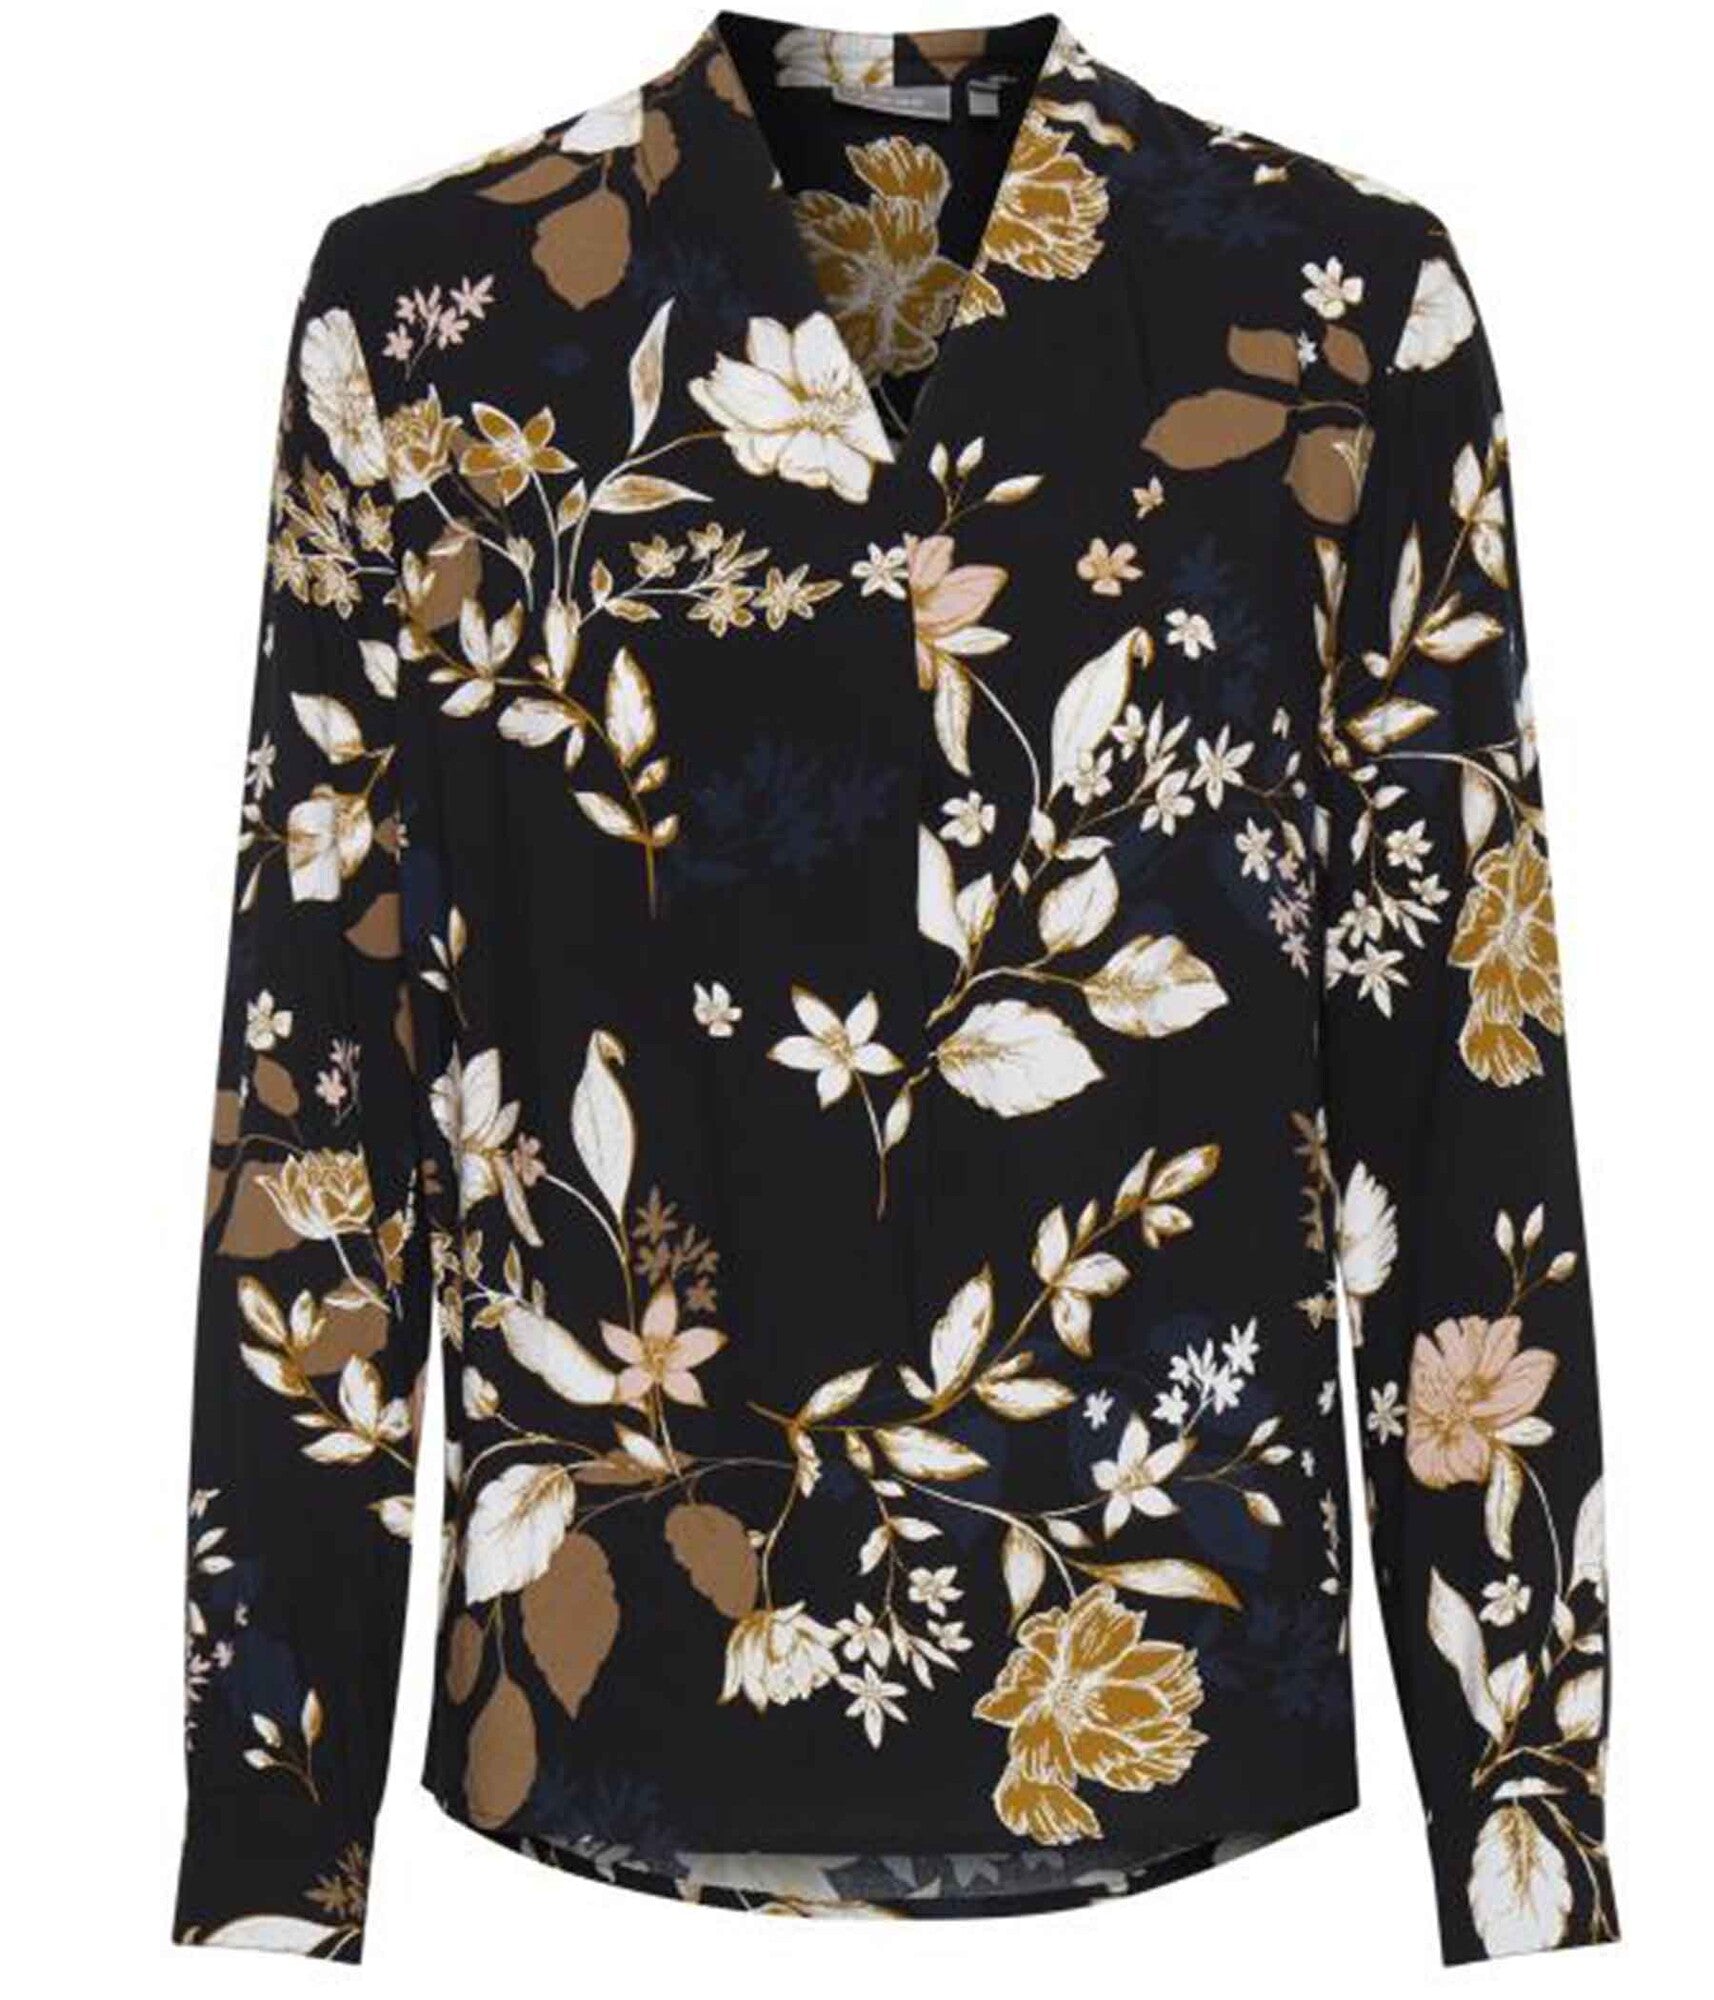 Fransa bluse med blomster print i sort – Heidisbutik | Blusenkleider